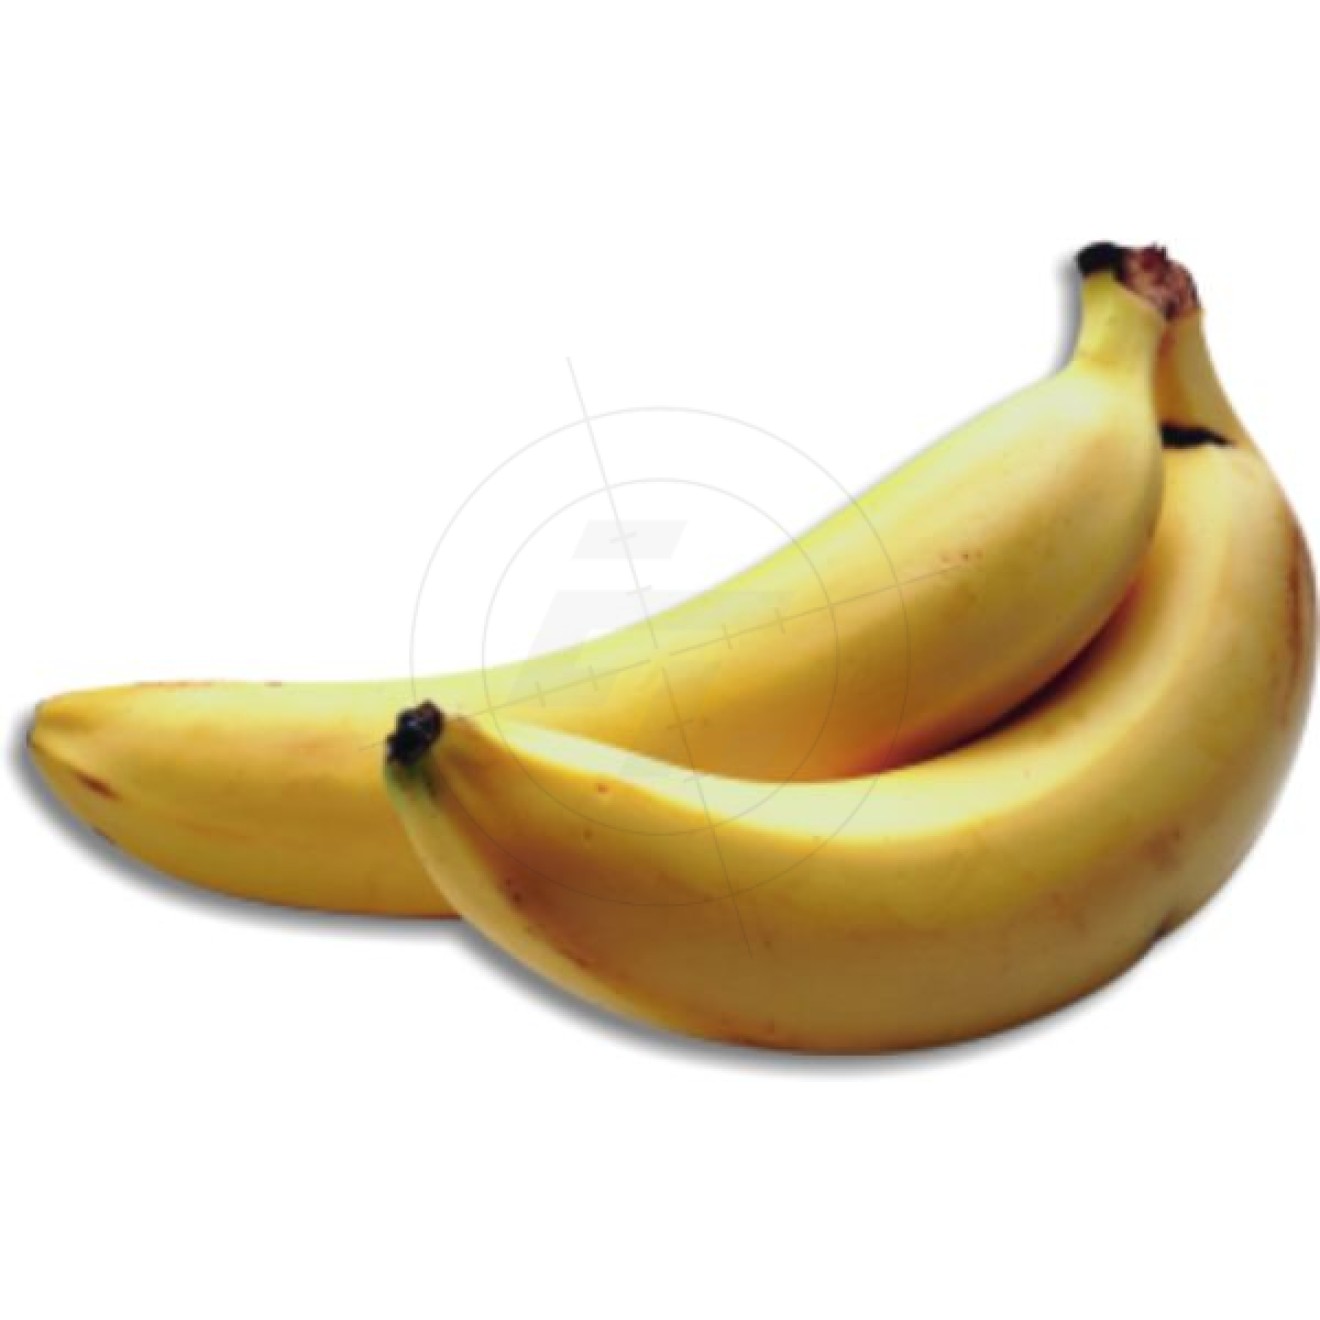 Stickers bananas, 2 pieces